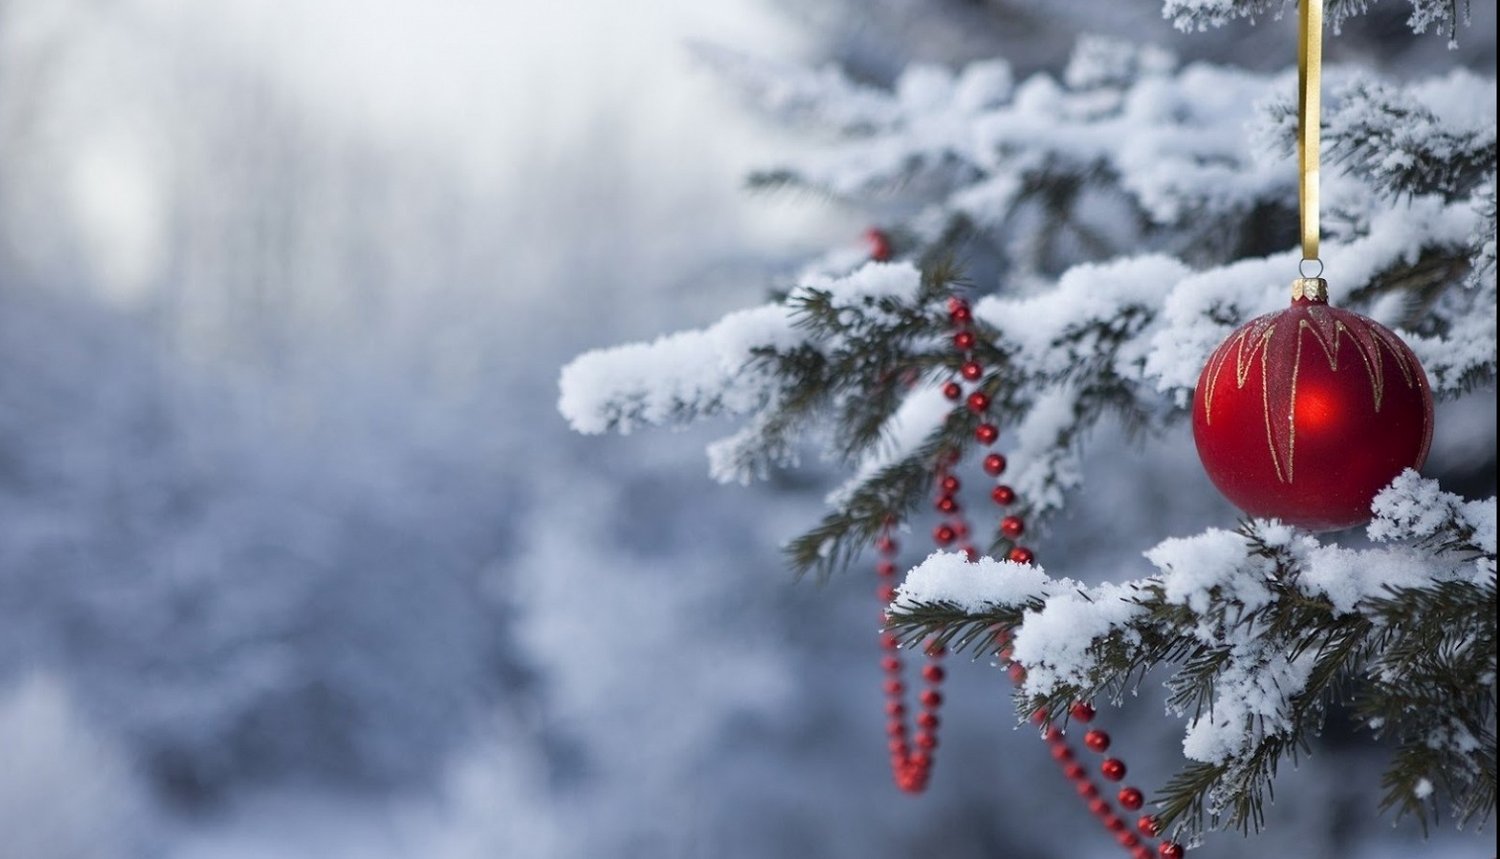 Božična fotografija prikazuje zasneženo smreko z novoletnim okraskom.